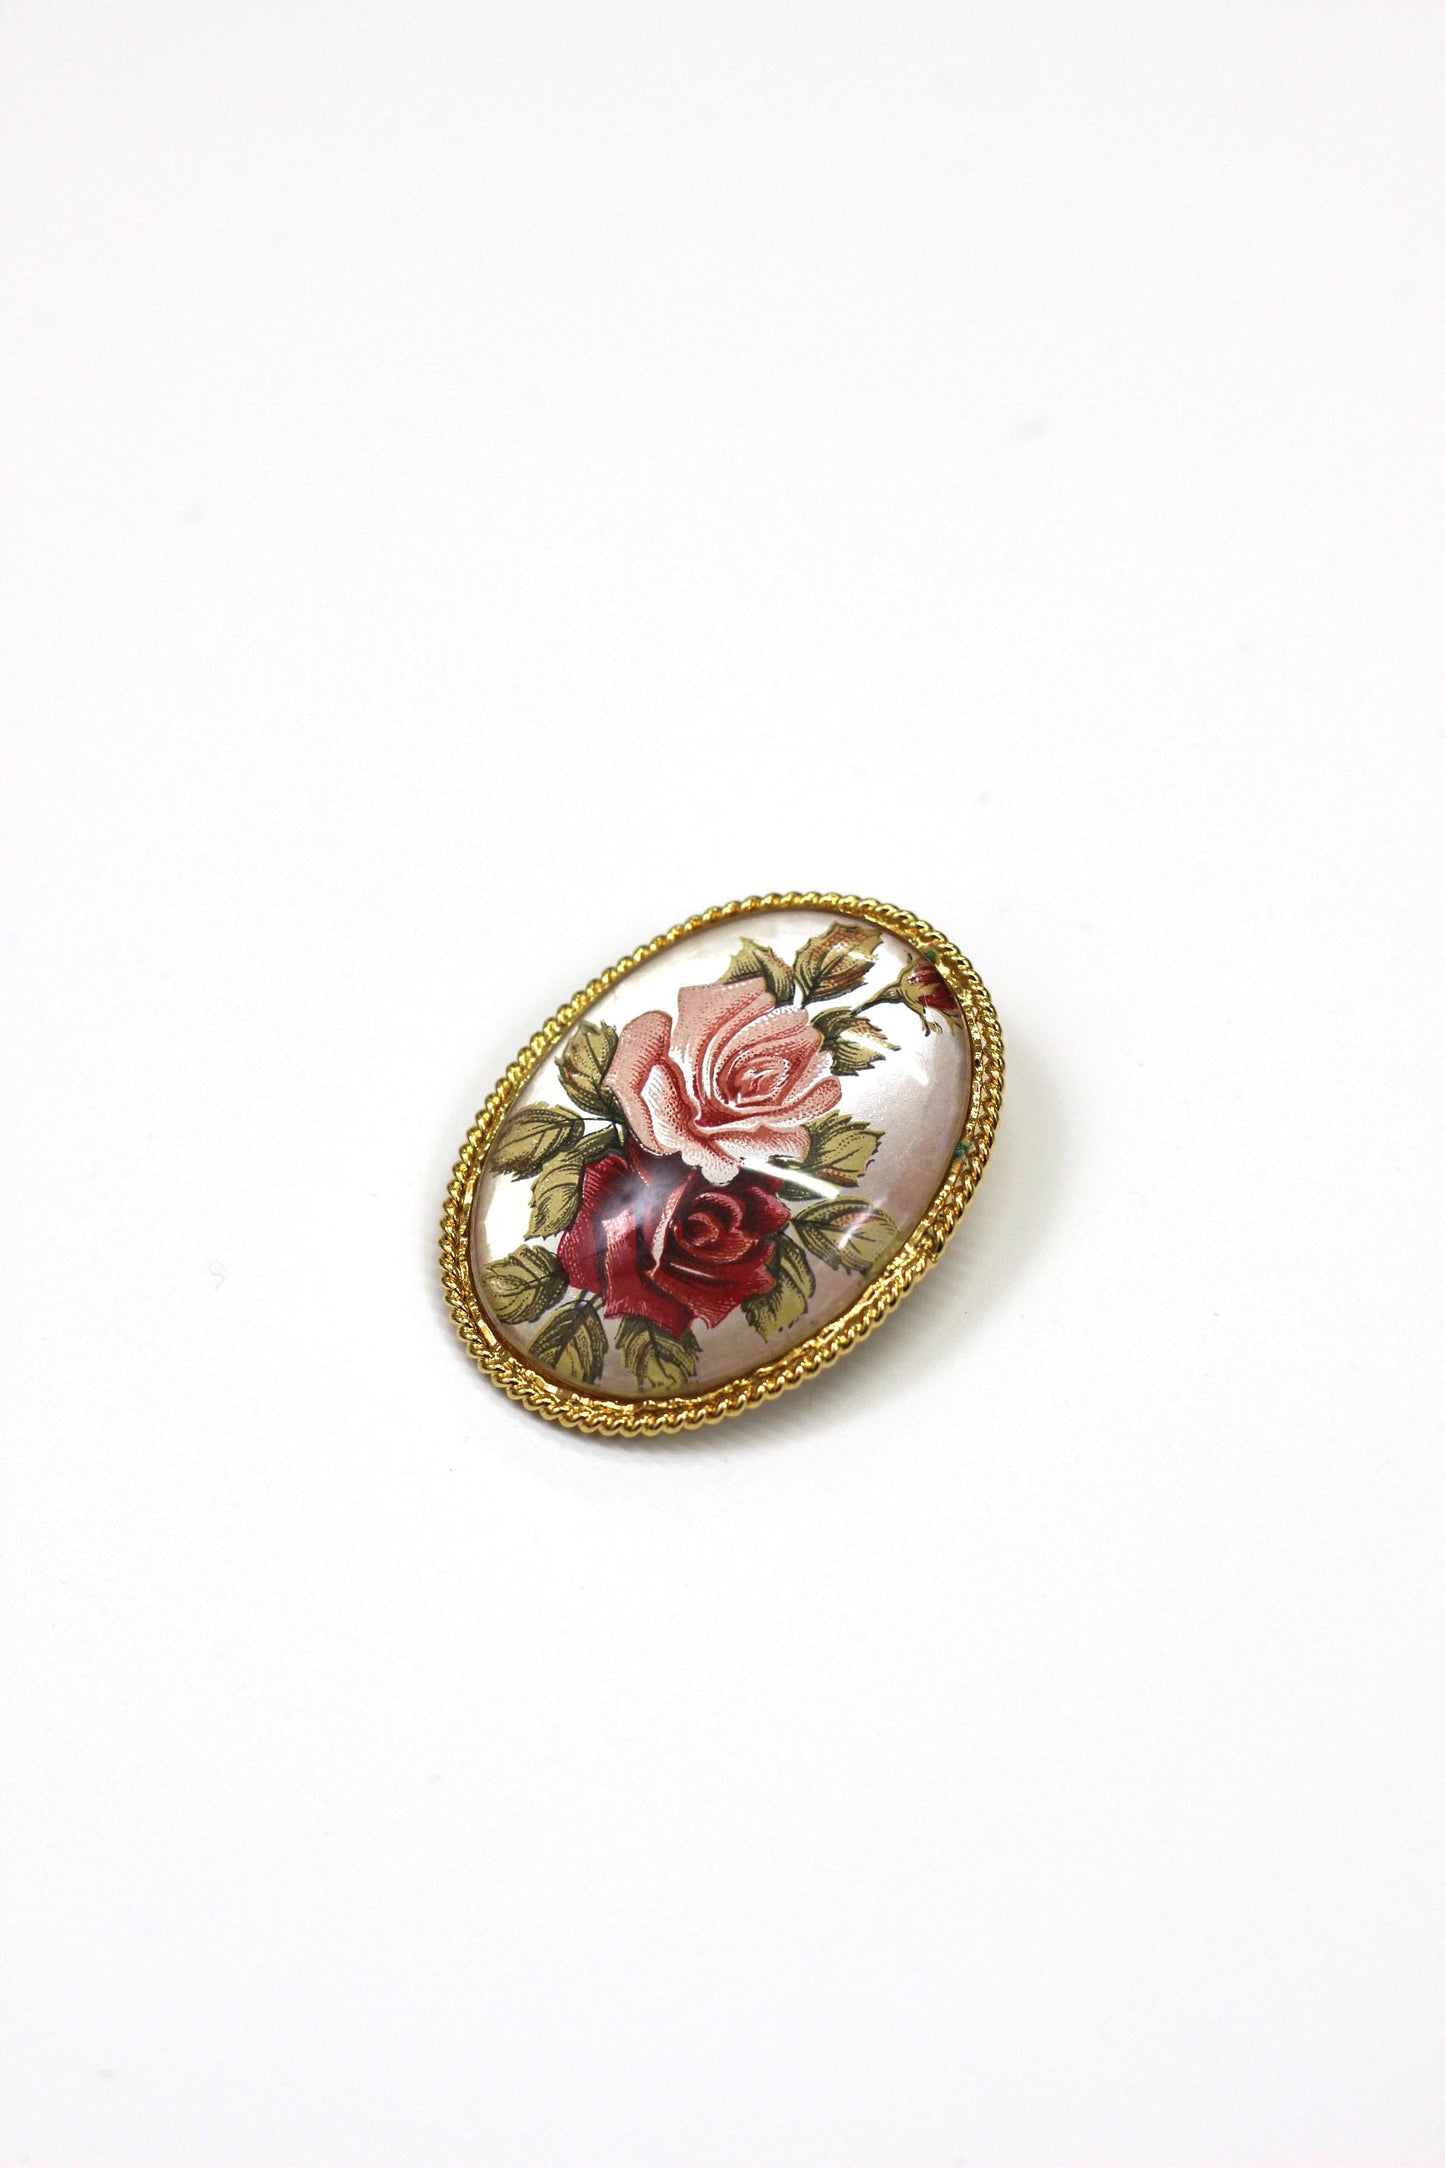 Vintage rose brooch ベルサイユのバラ